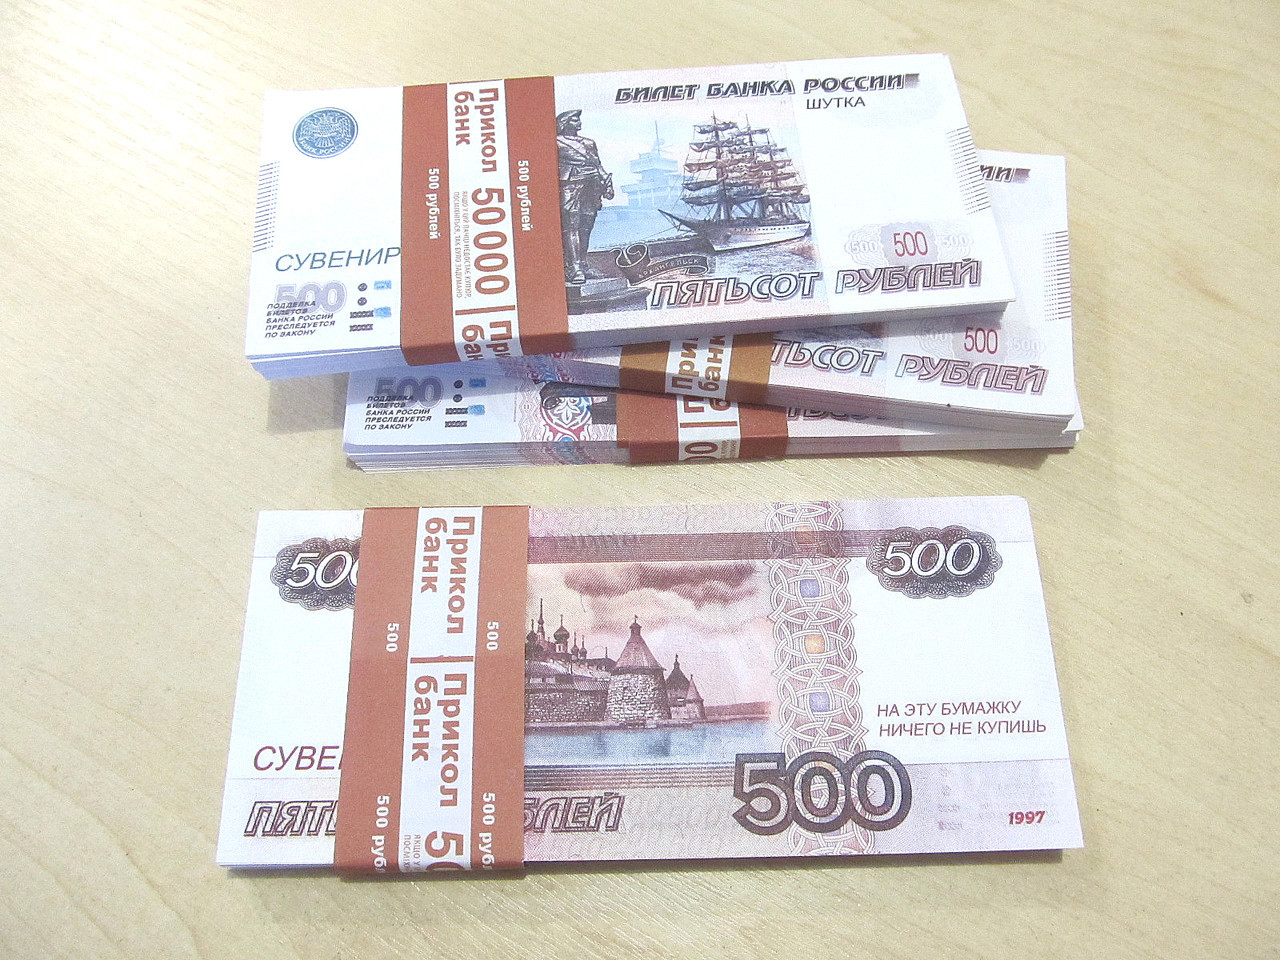 80 от 500 рублей. Сувенирные деньги. 500 Рублей пачка. Пачка денег 500 рублей. Пачка по 500 рублей.